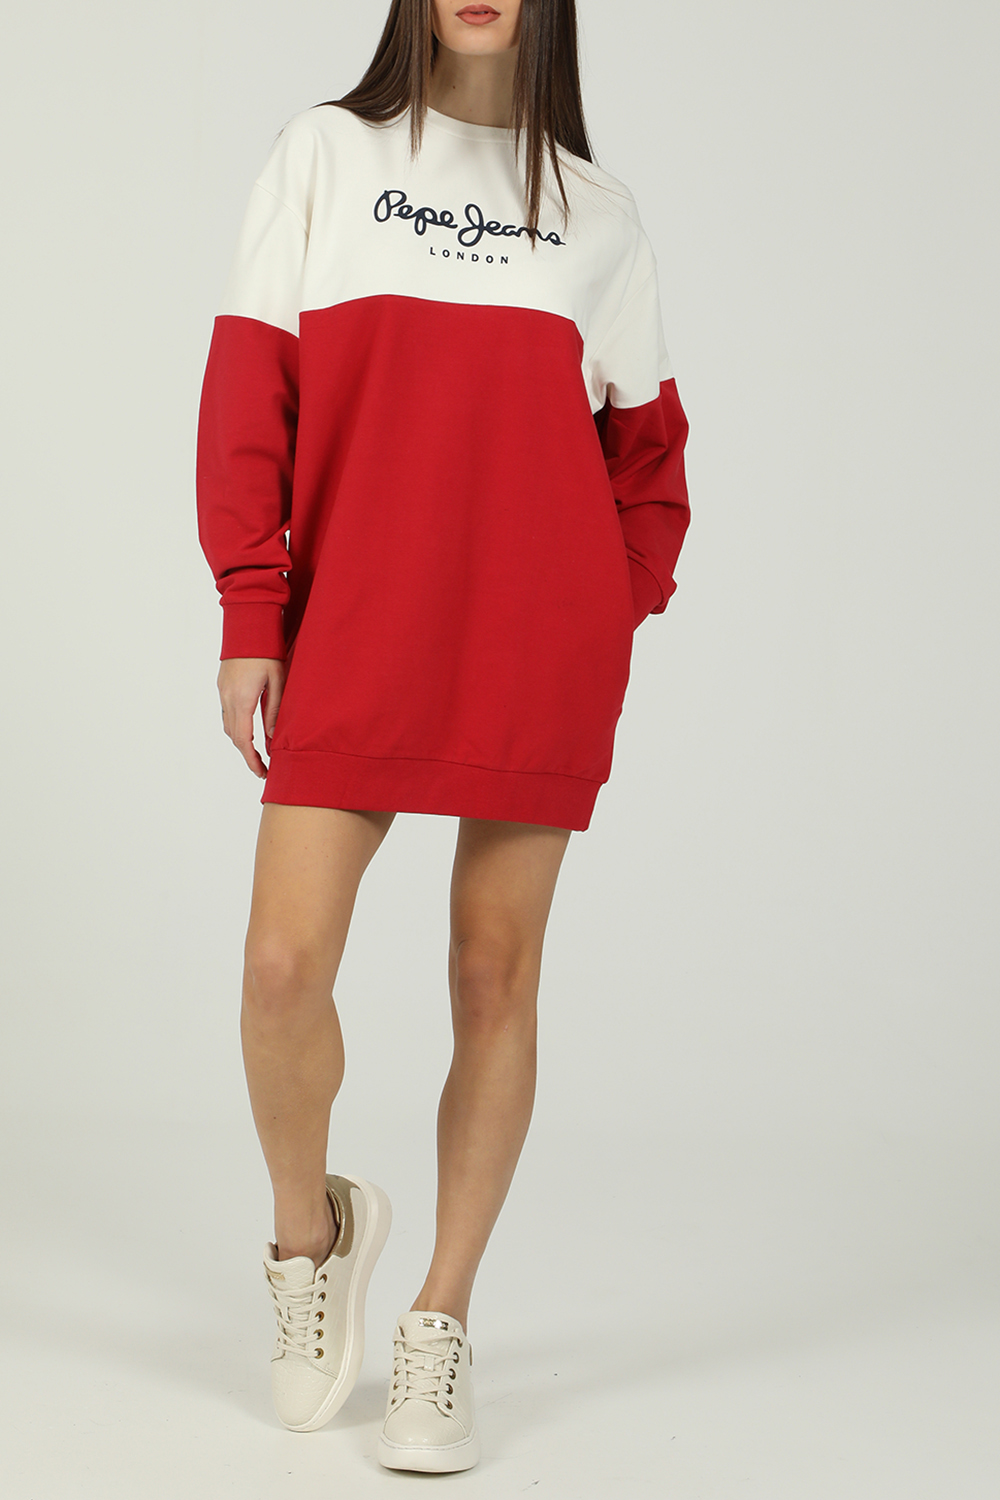 Γυναικεία/Ρούχα/Φόρεματα/Μίνι PEPE JEANS - Γυναικείο mini φόρεμα PEPE JEANS BLANCHE λευκό κόκκινο